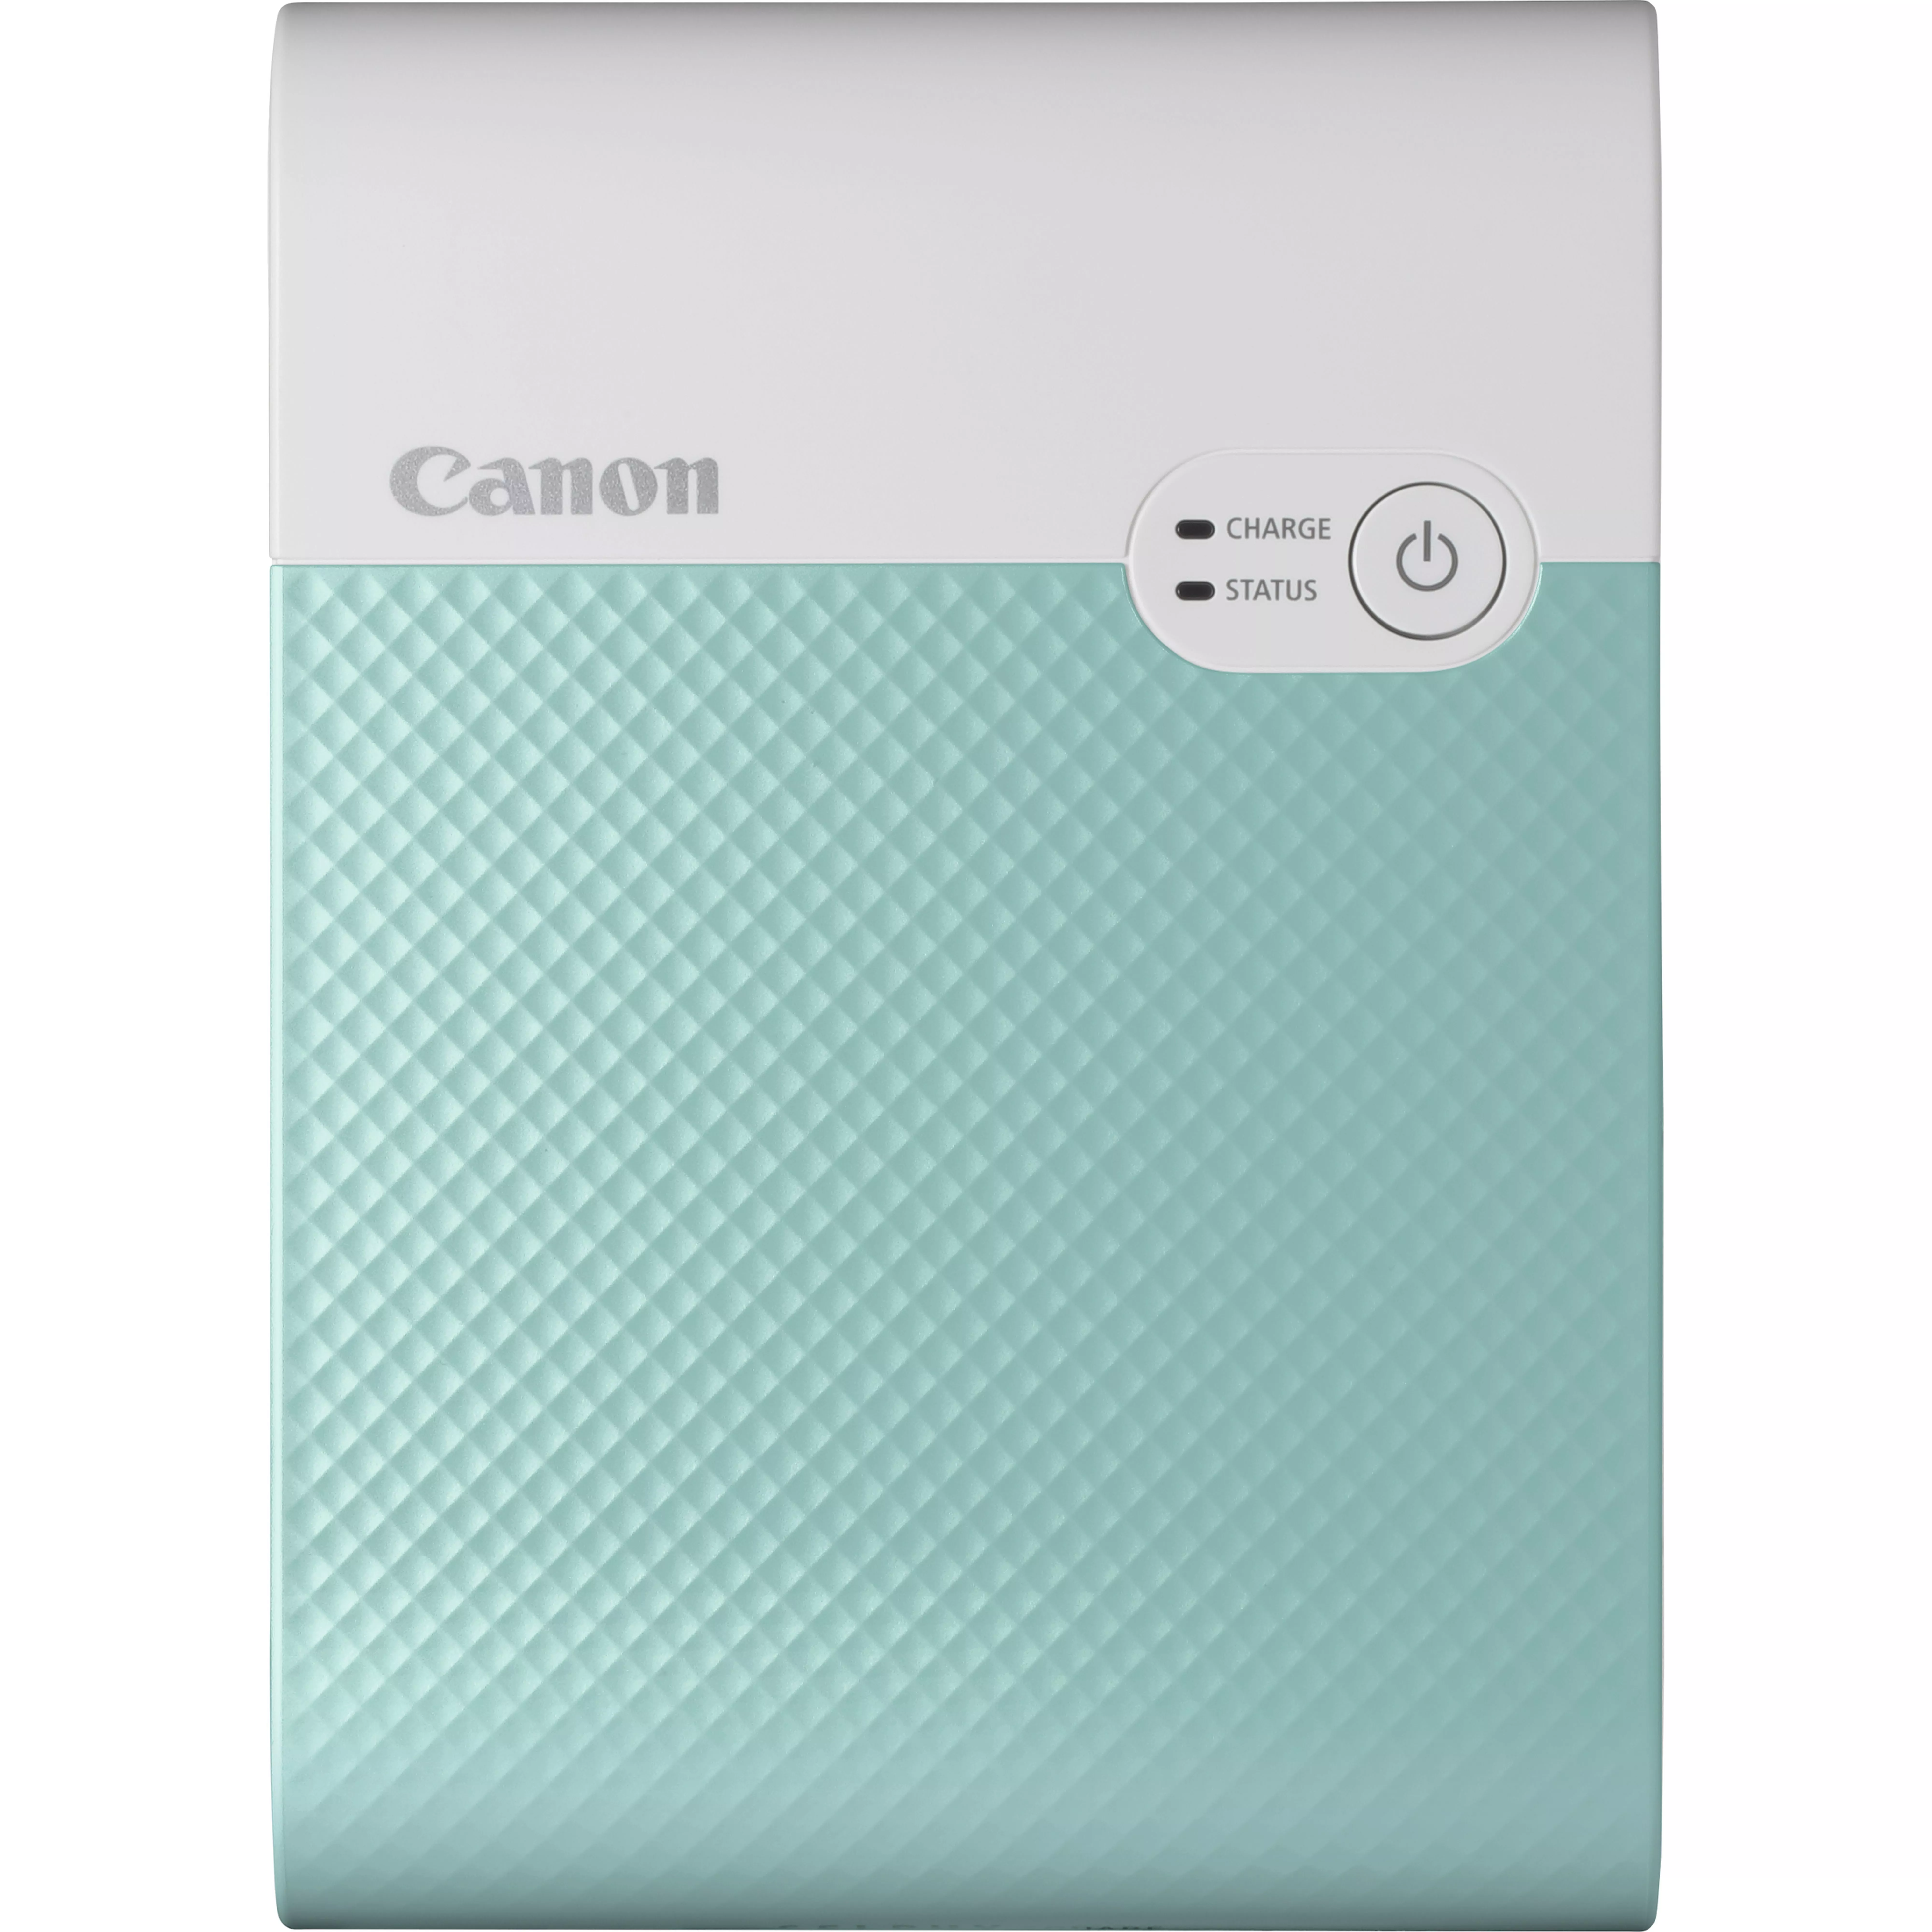 Achat Canon Imprimante photo couleur portable sans fil SELPHY sur hello RSE